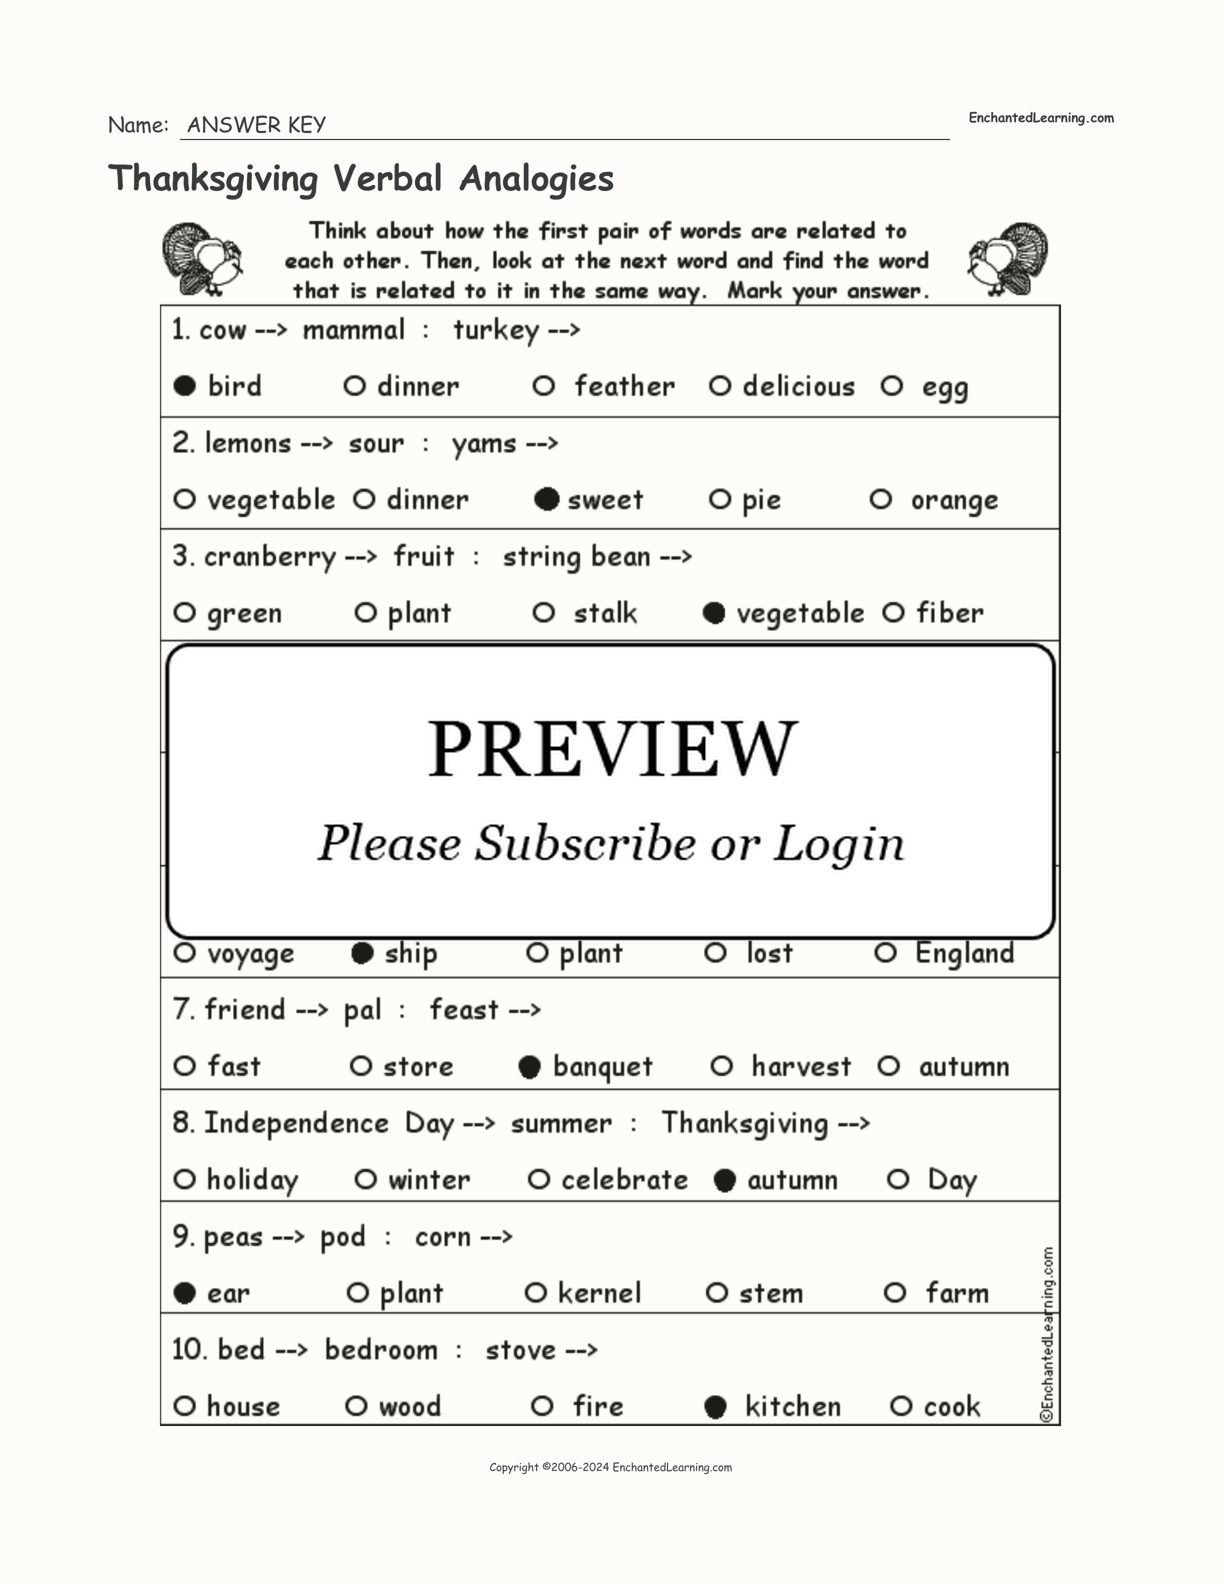 Thanksgiving Verbal Analogies interactive worksheet page 2